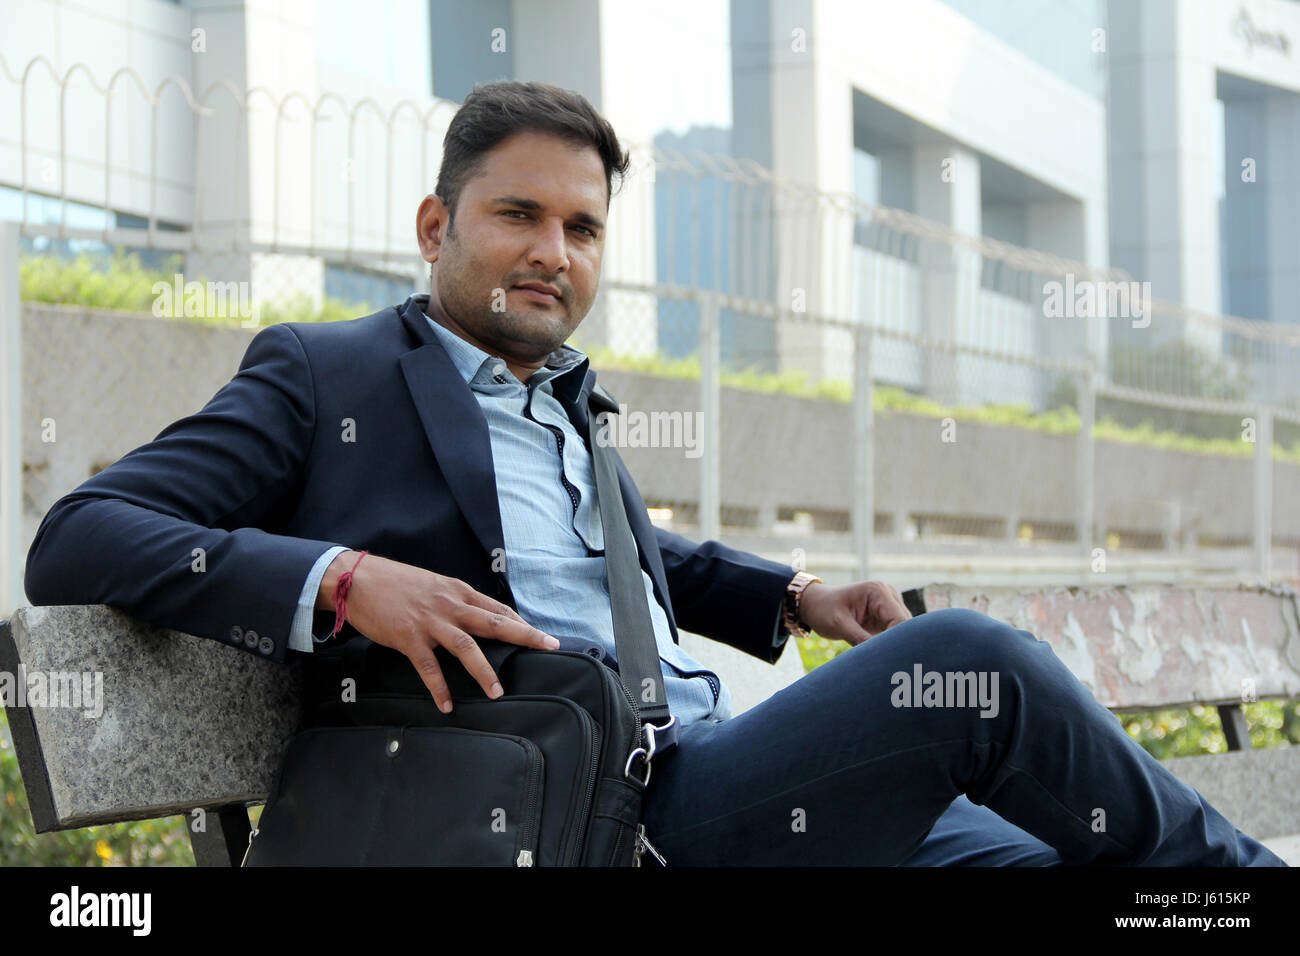 Junge indische Unternehmen Mann im Anzug auf der Bank sitzen und Lächeln Stockfoto